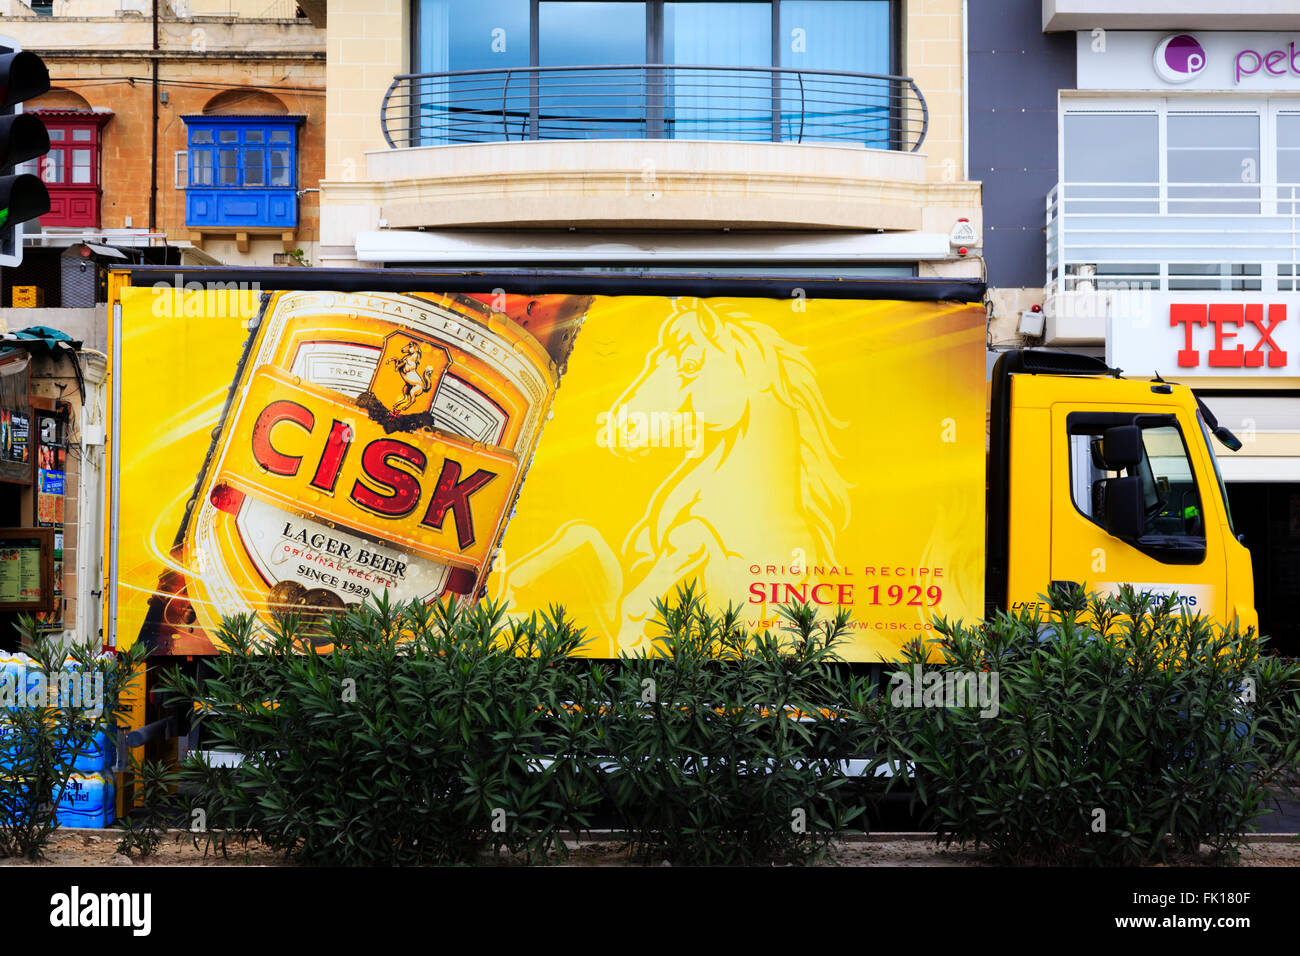 Cisk lager brassée maltais camion de livraison, Sliema, Malte Banque D'Images